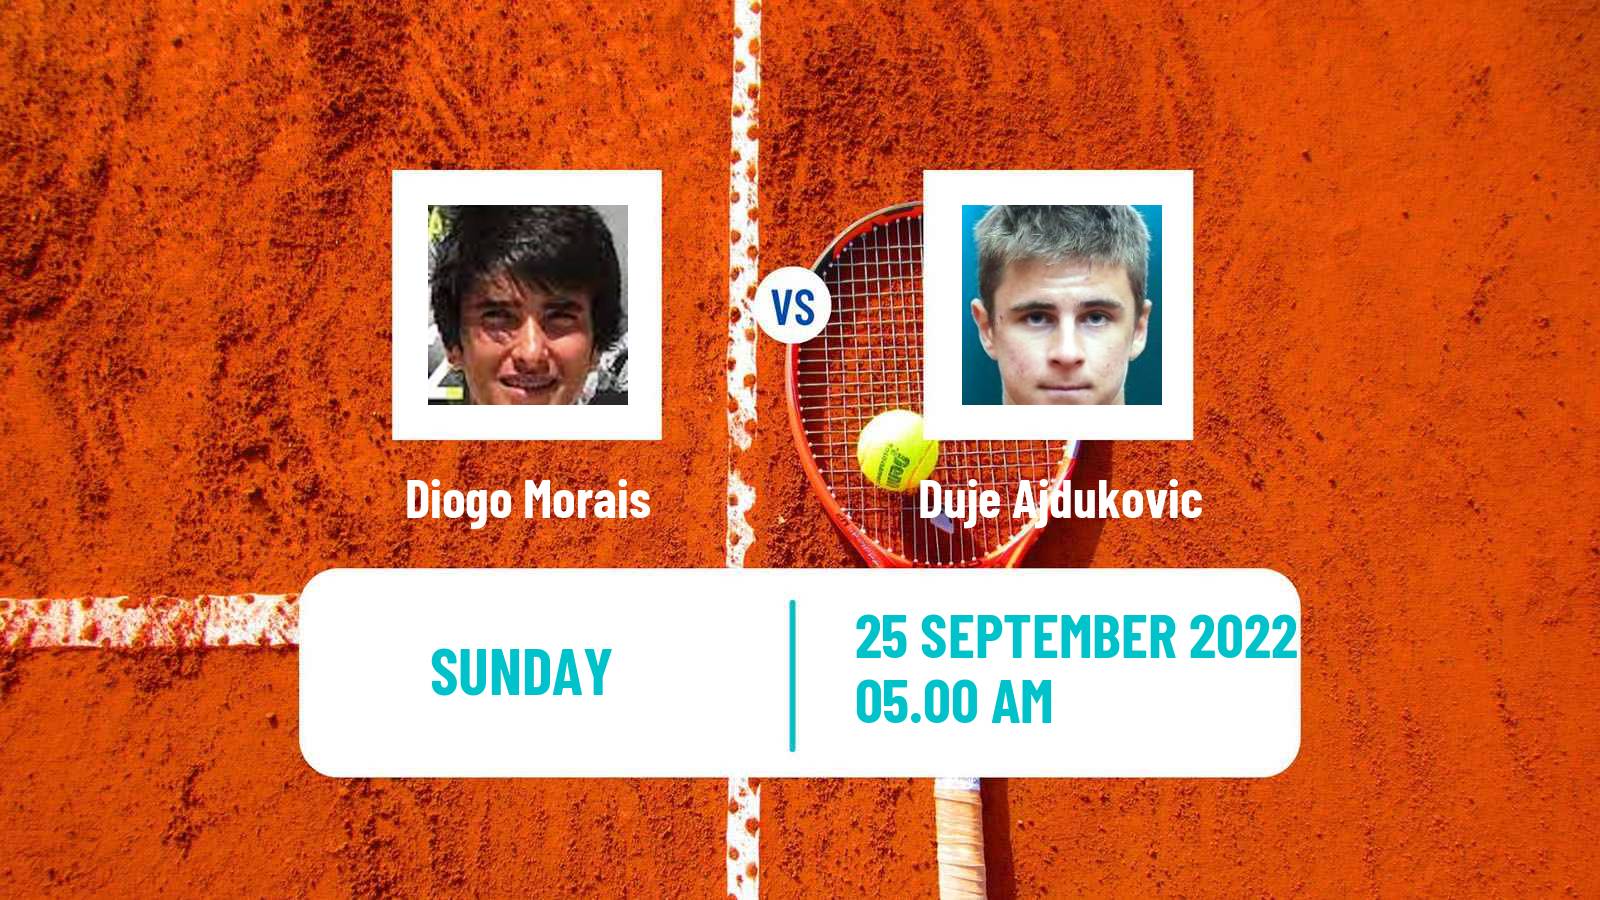 Tennis ATP Challenger Diogo Morais - Duje Ajdukovic